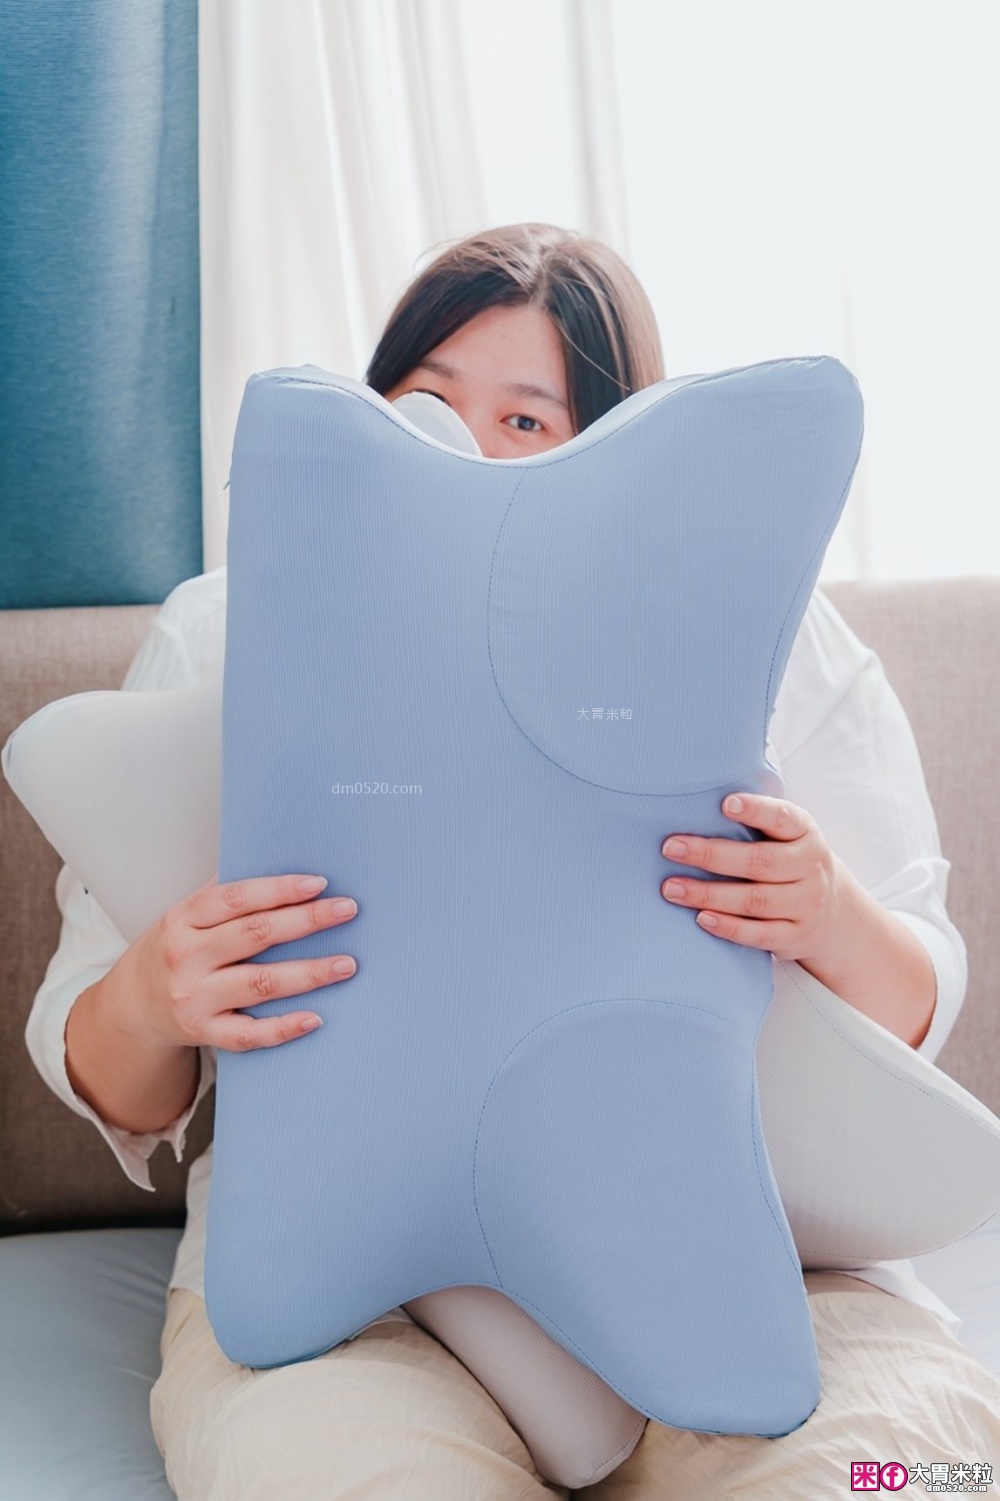 藝人明星推薦~每六秒就賣出一顆的枕頭「枕好睡記憶機能枕」│人體工學枕頭設計│失眠專用枕頭就選它│